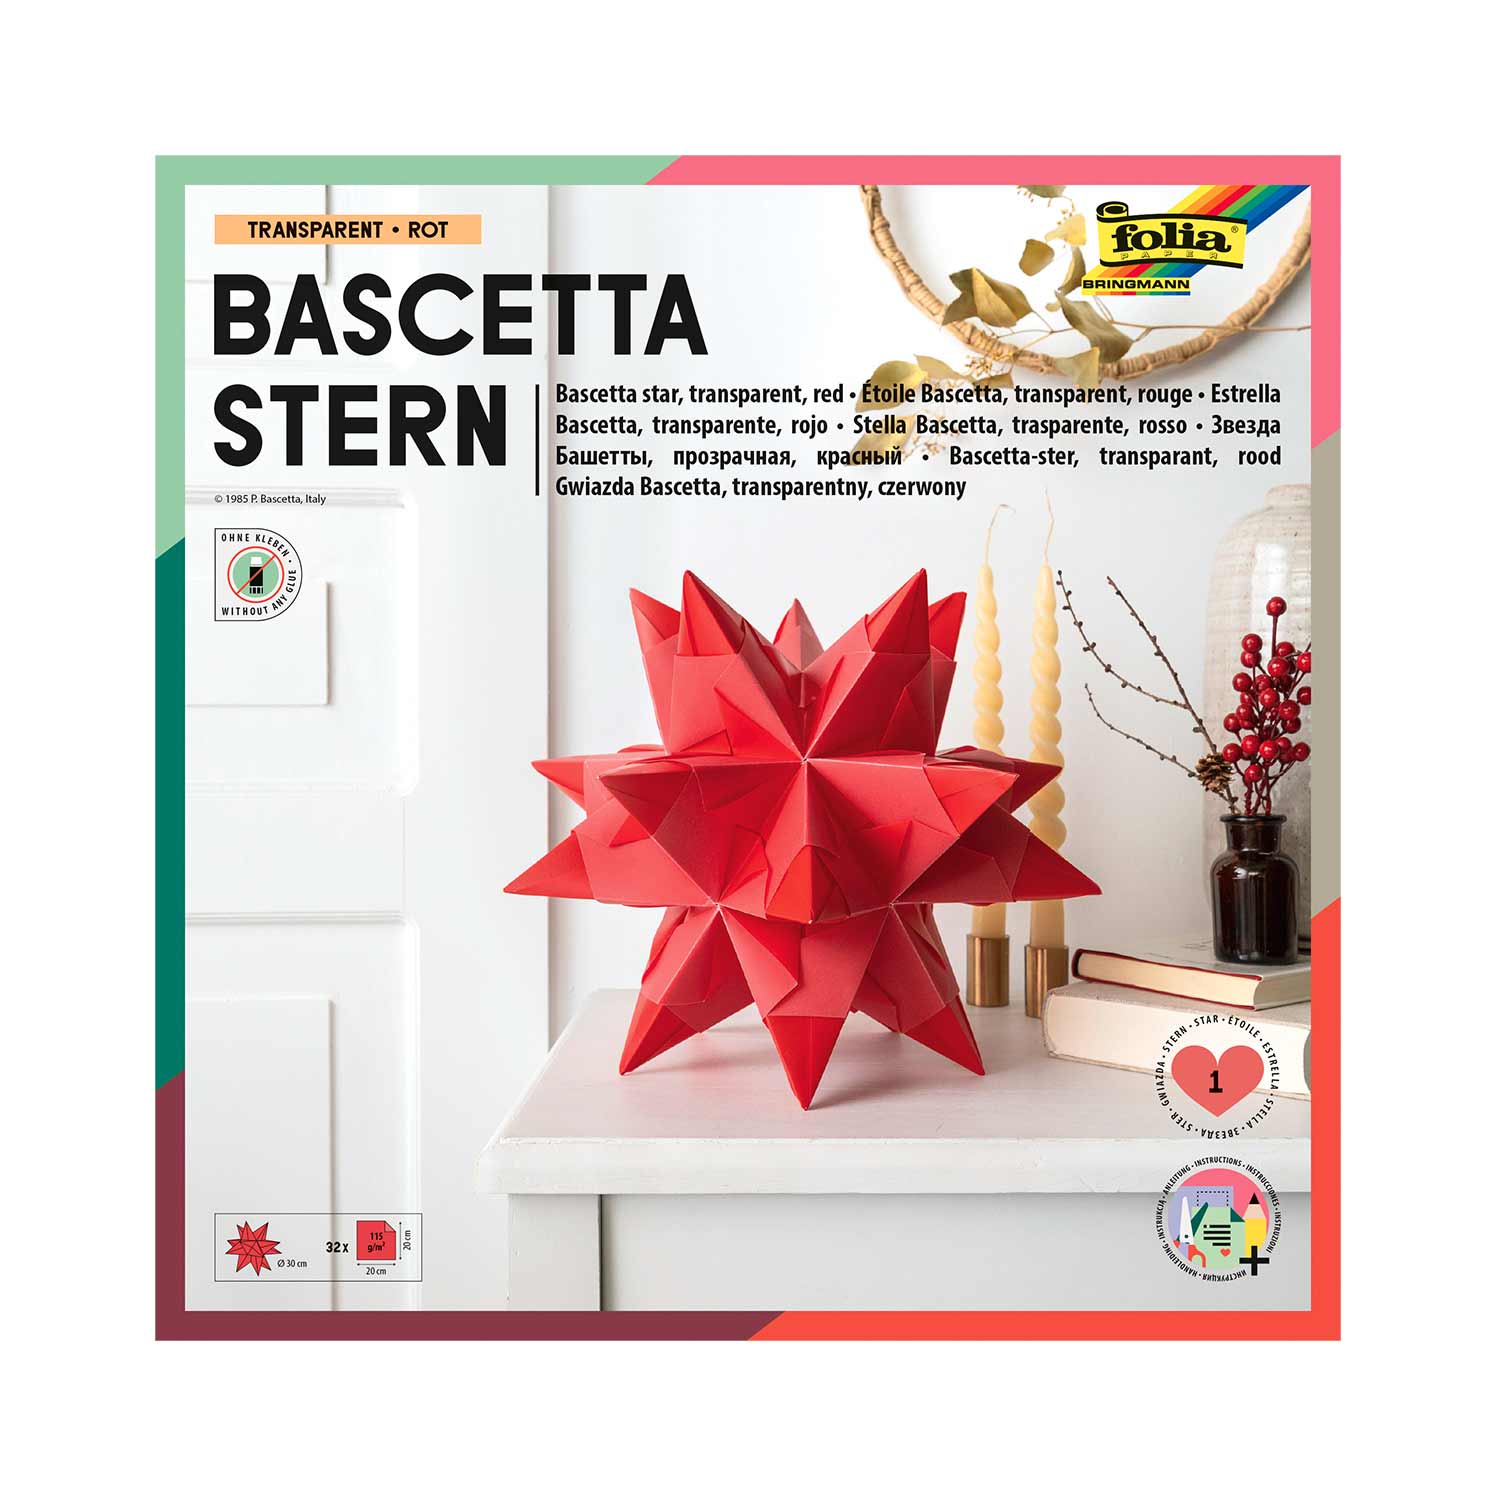 Bascetta-Stern Bastelset 32 Blatt 20 x 20 cm Transparentpapier rot